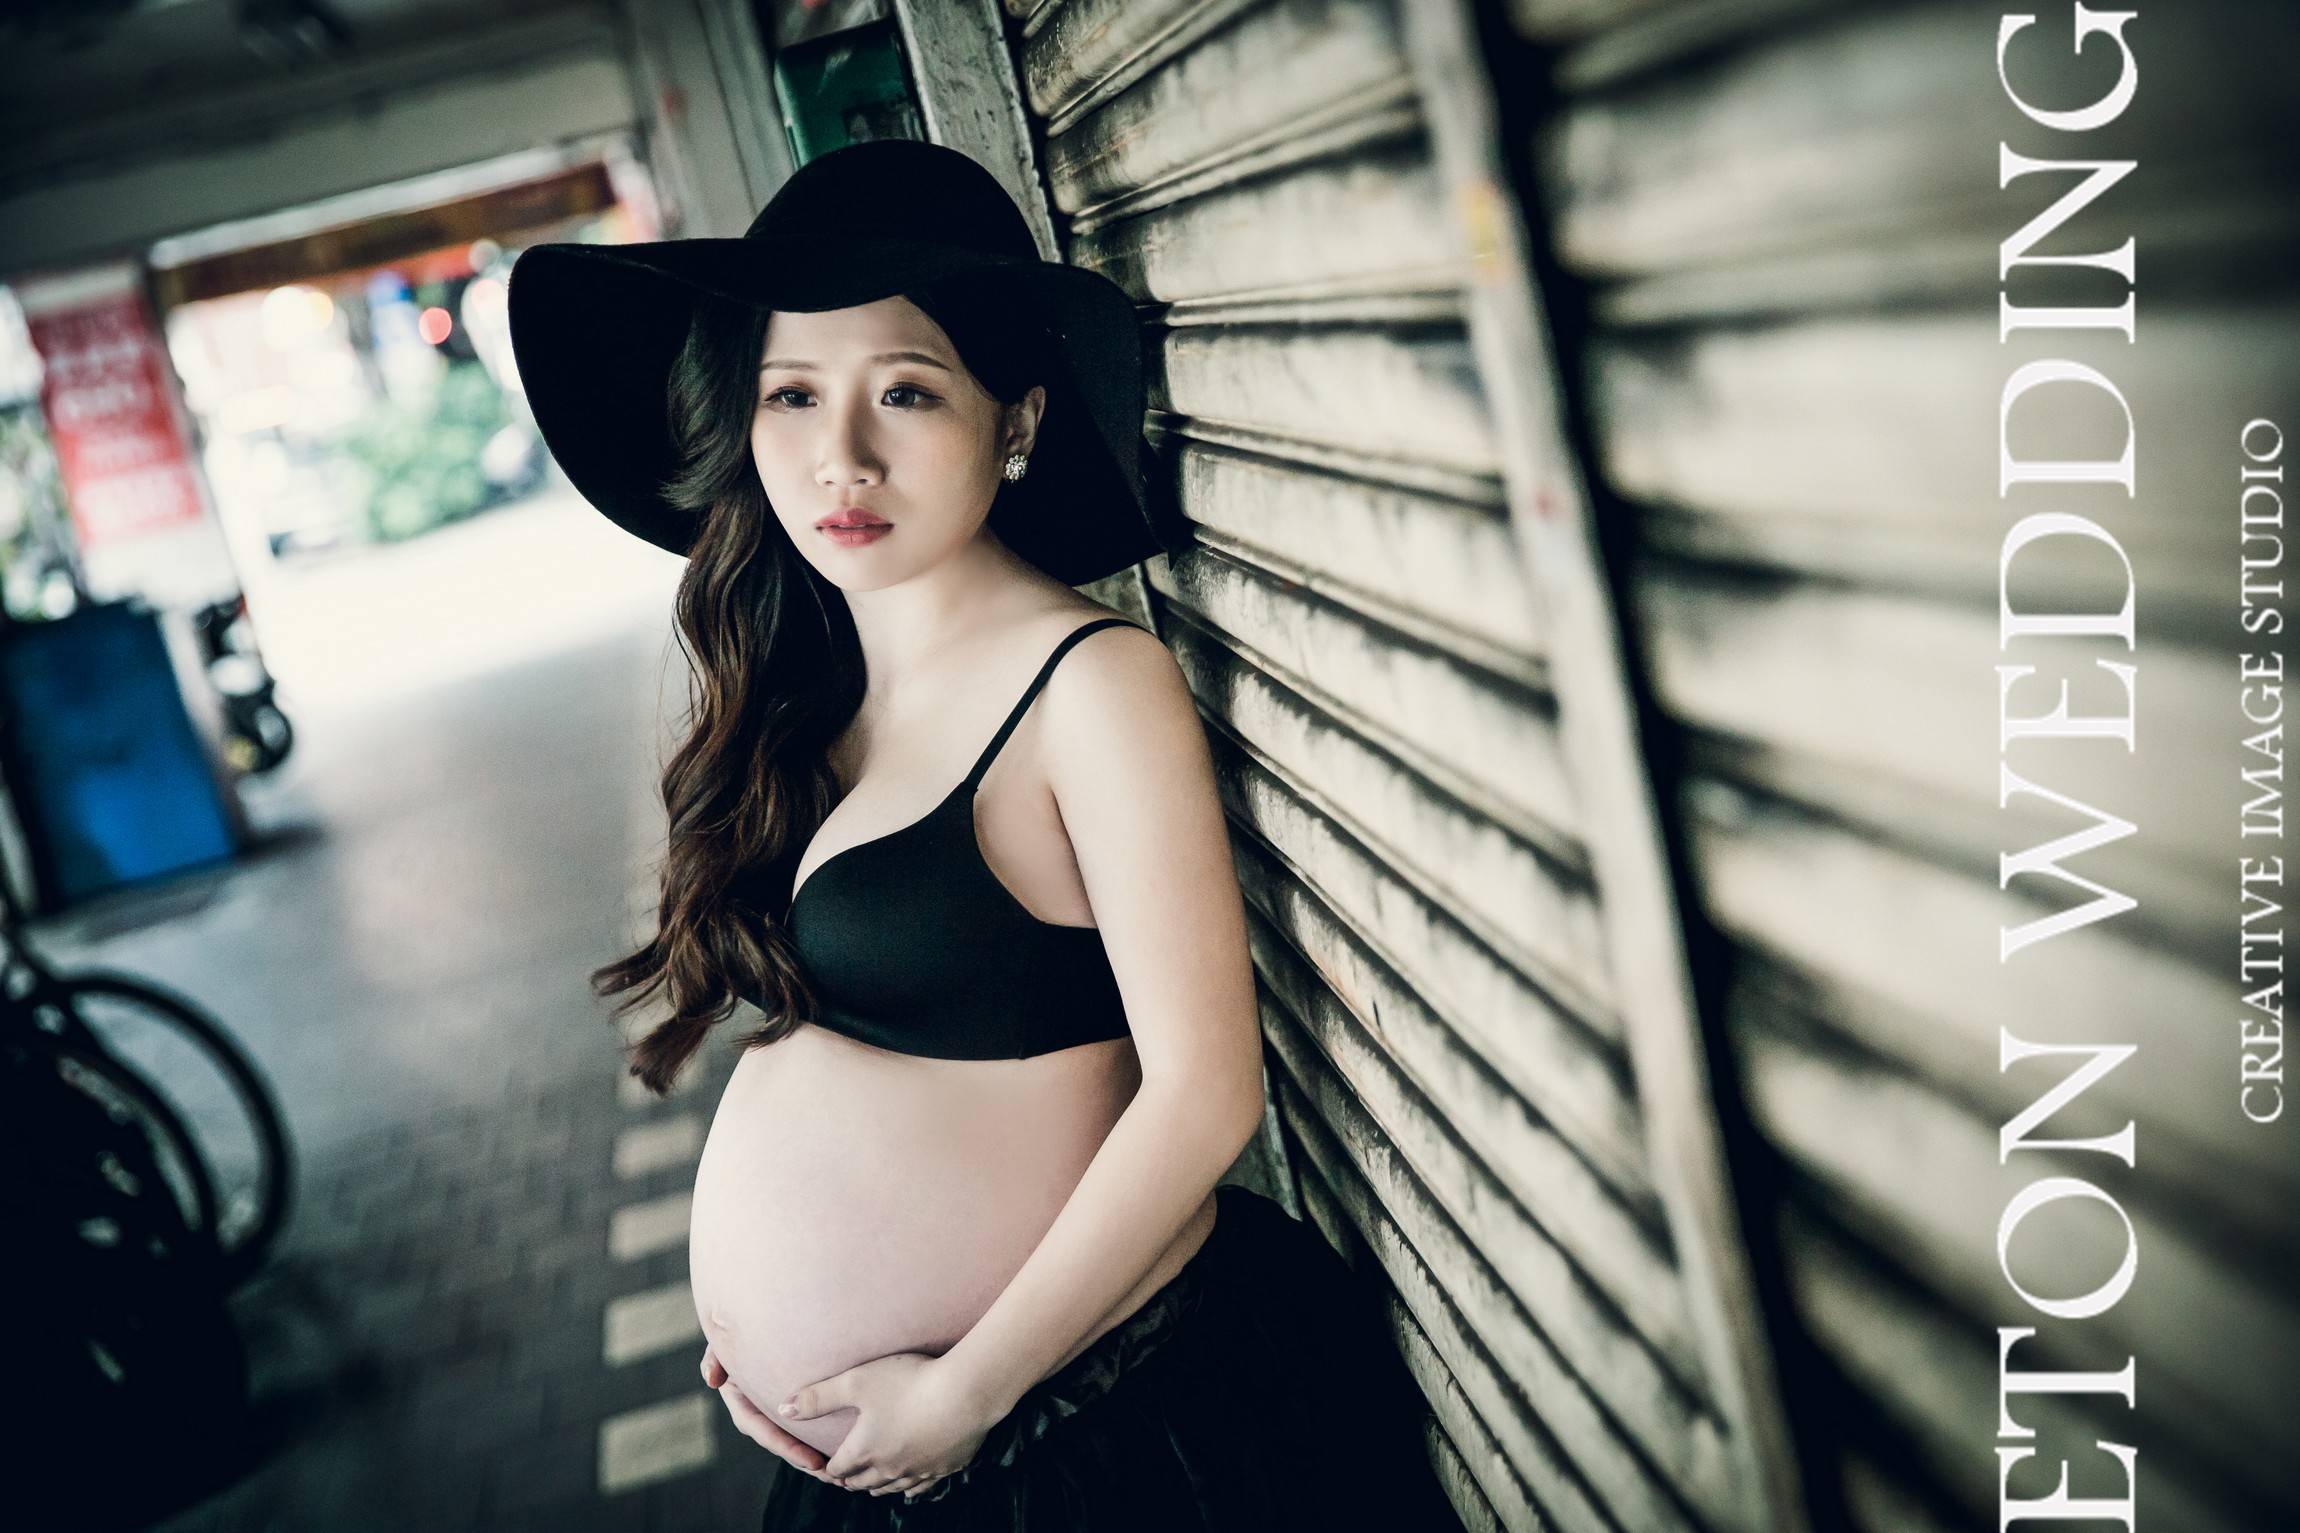 孕婦寫真 台南,孕婦照 台南,孕媽咪攝影 台南,台南孕婦照,台南孕婦寫真 價格 